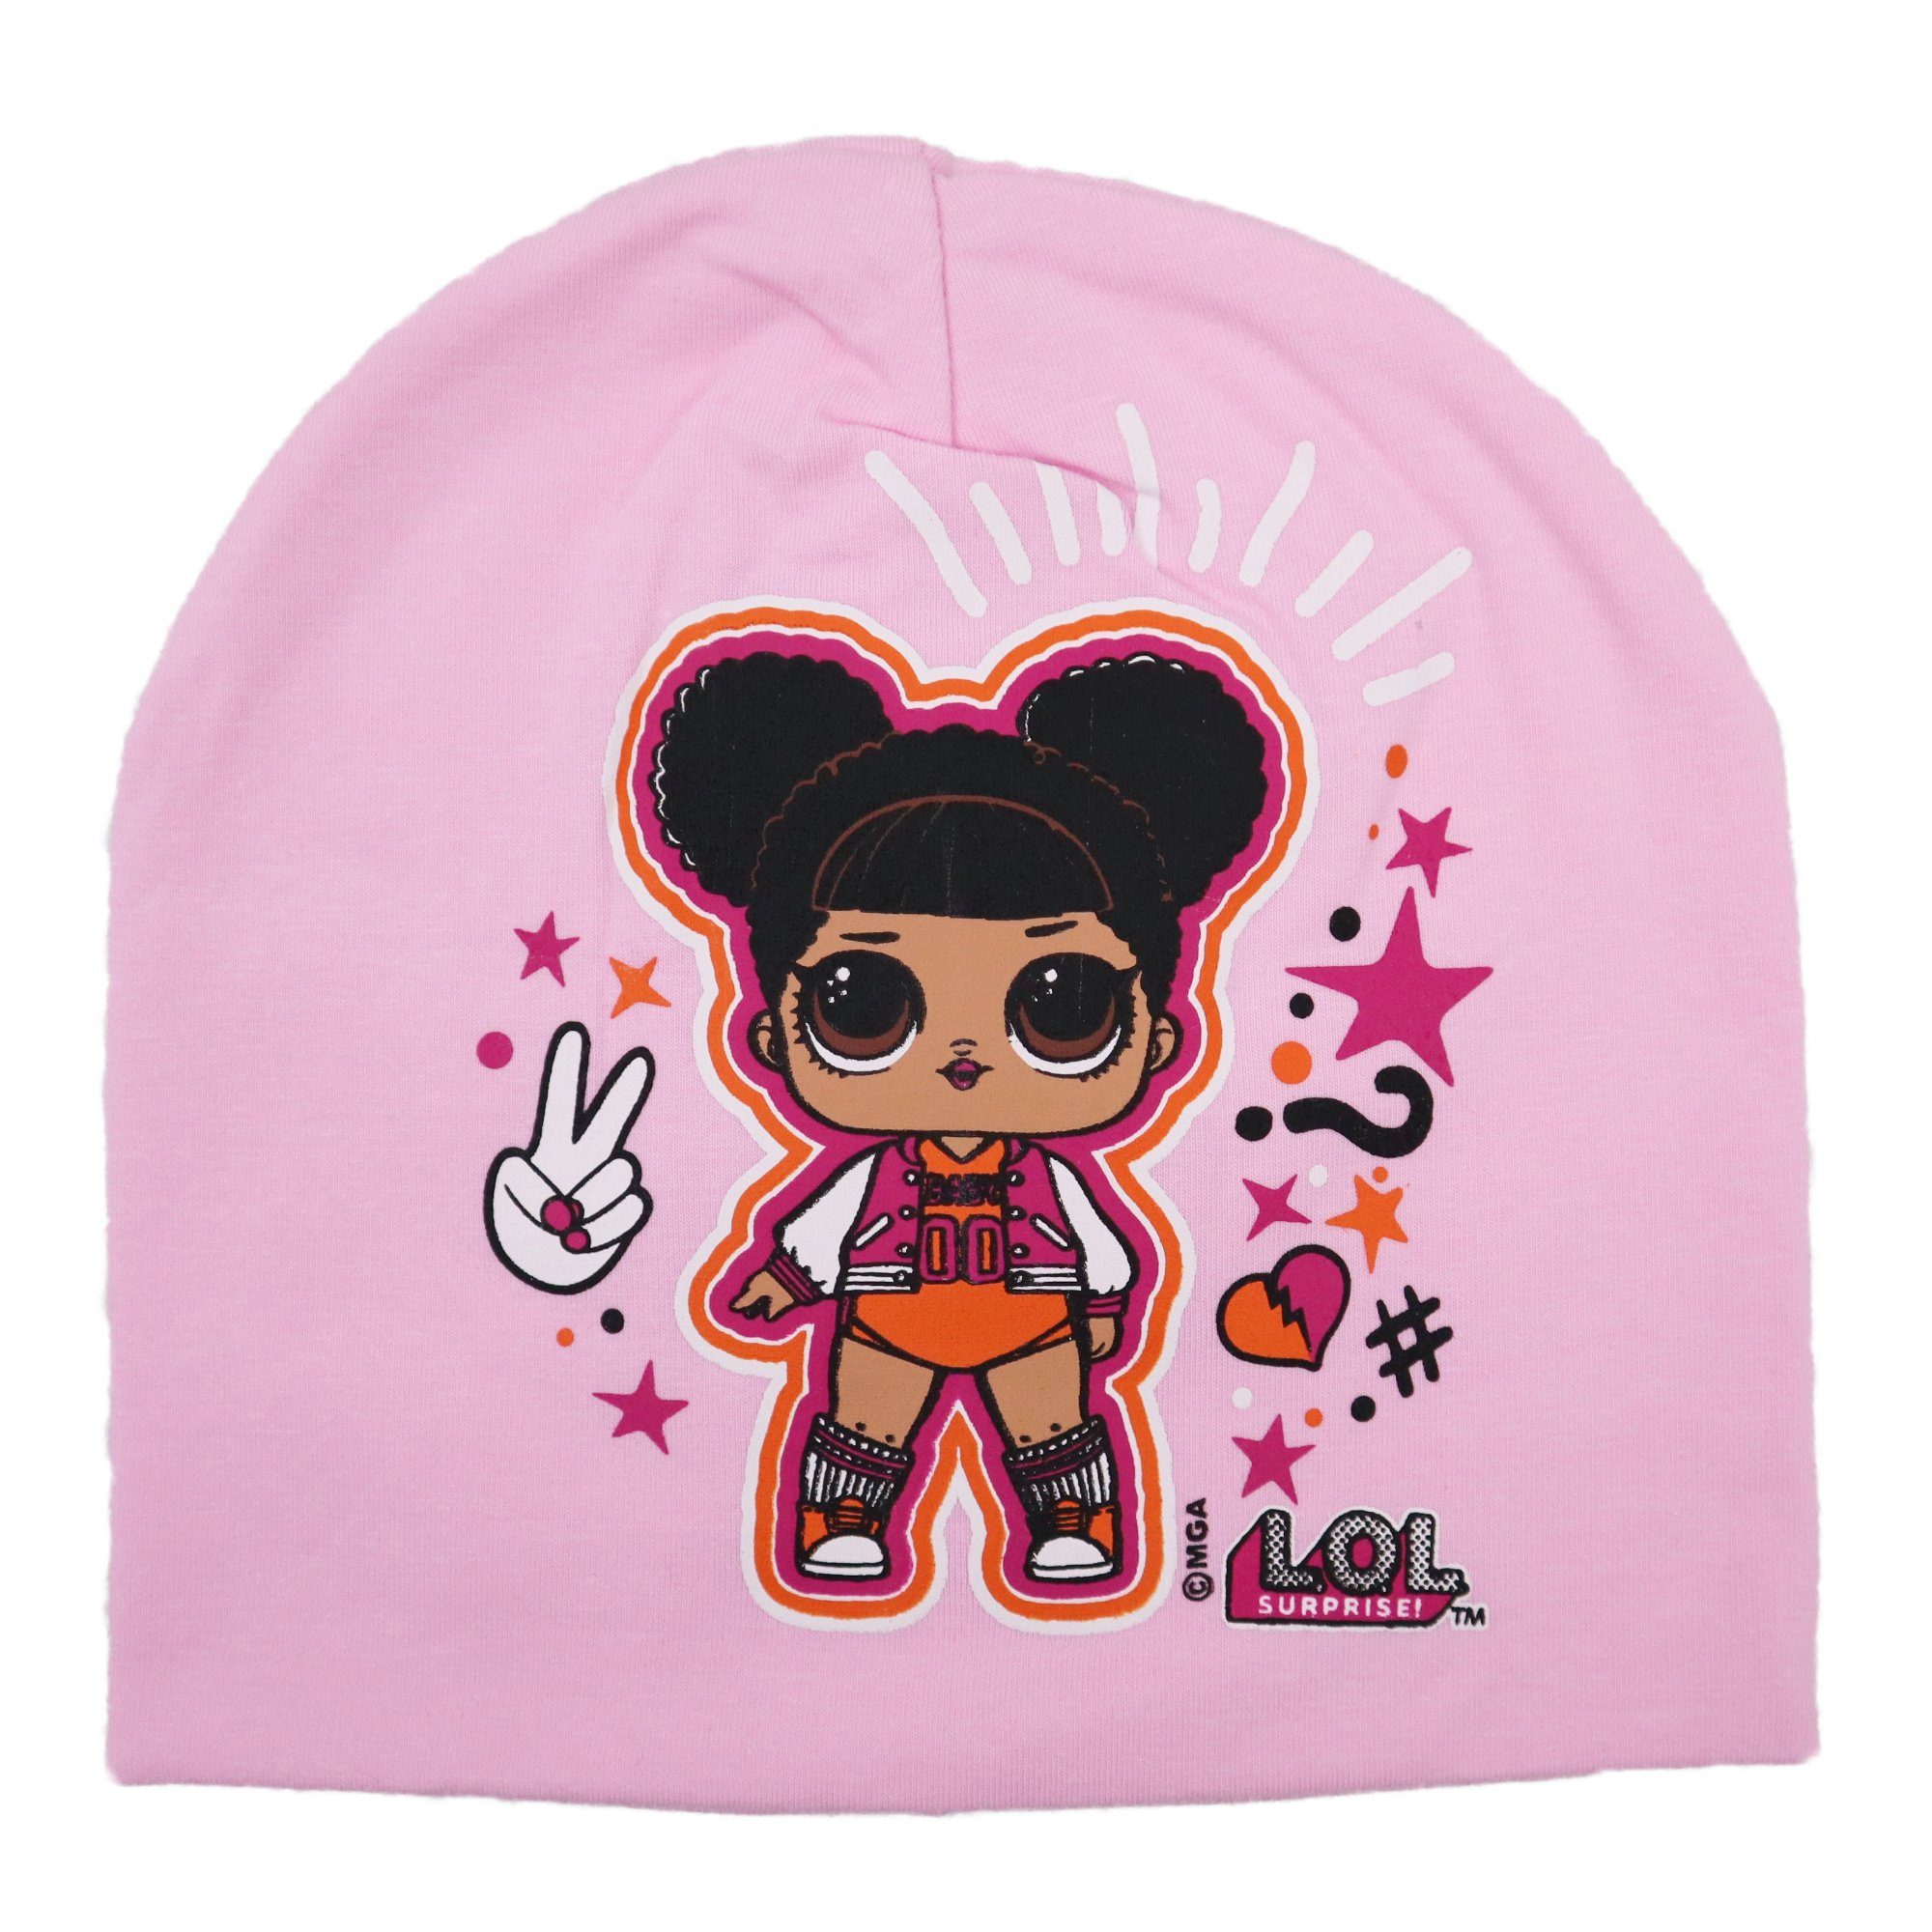 LOL Surprise Schlupfmütze »Kinder Mütze - Cheerleader« Gr. 52 oder 54 cm,  100% Baumwolle, in Pink oder Rosa online kaufen | OTTO